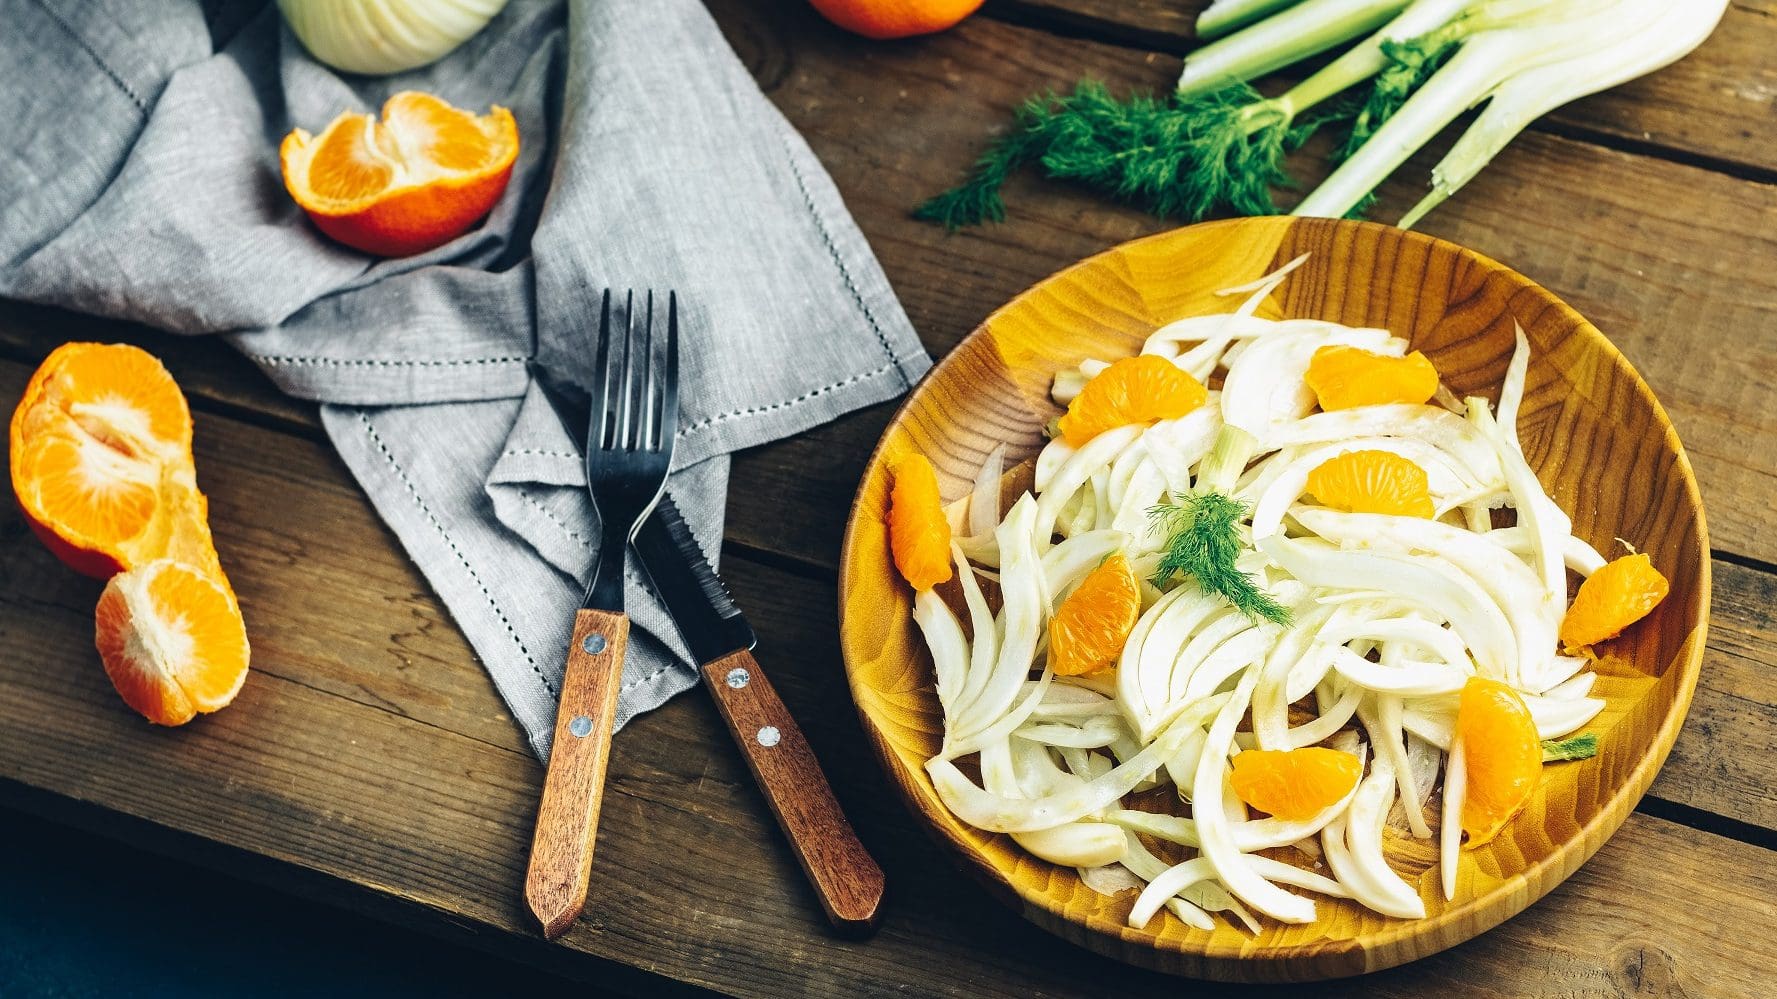 Auf einem Holzteller ist eine Fenchel-Orangen-Salat mit Roquefort-Vinaigrette angerichtet. Neben dem Teller liegen Orangenstücke, ein Messer sowie eine Fenchelknolle.